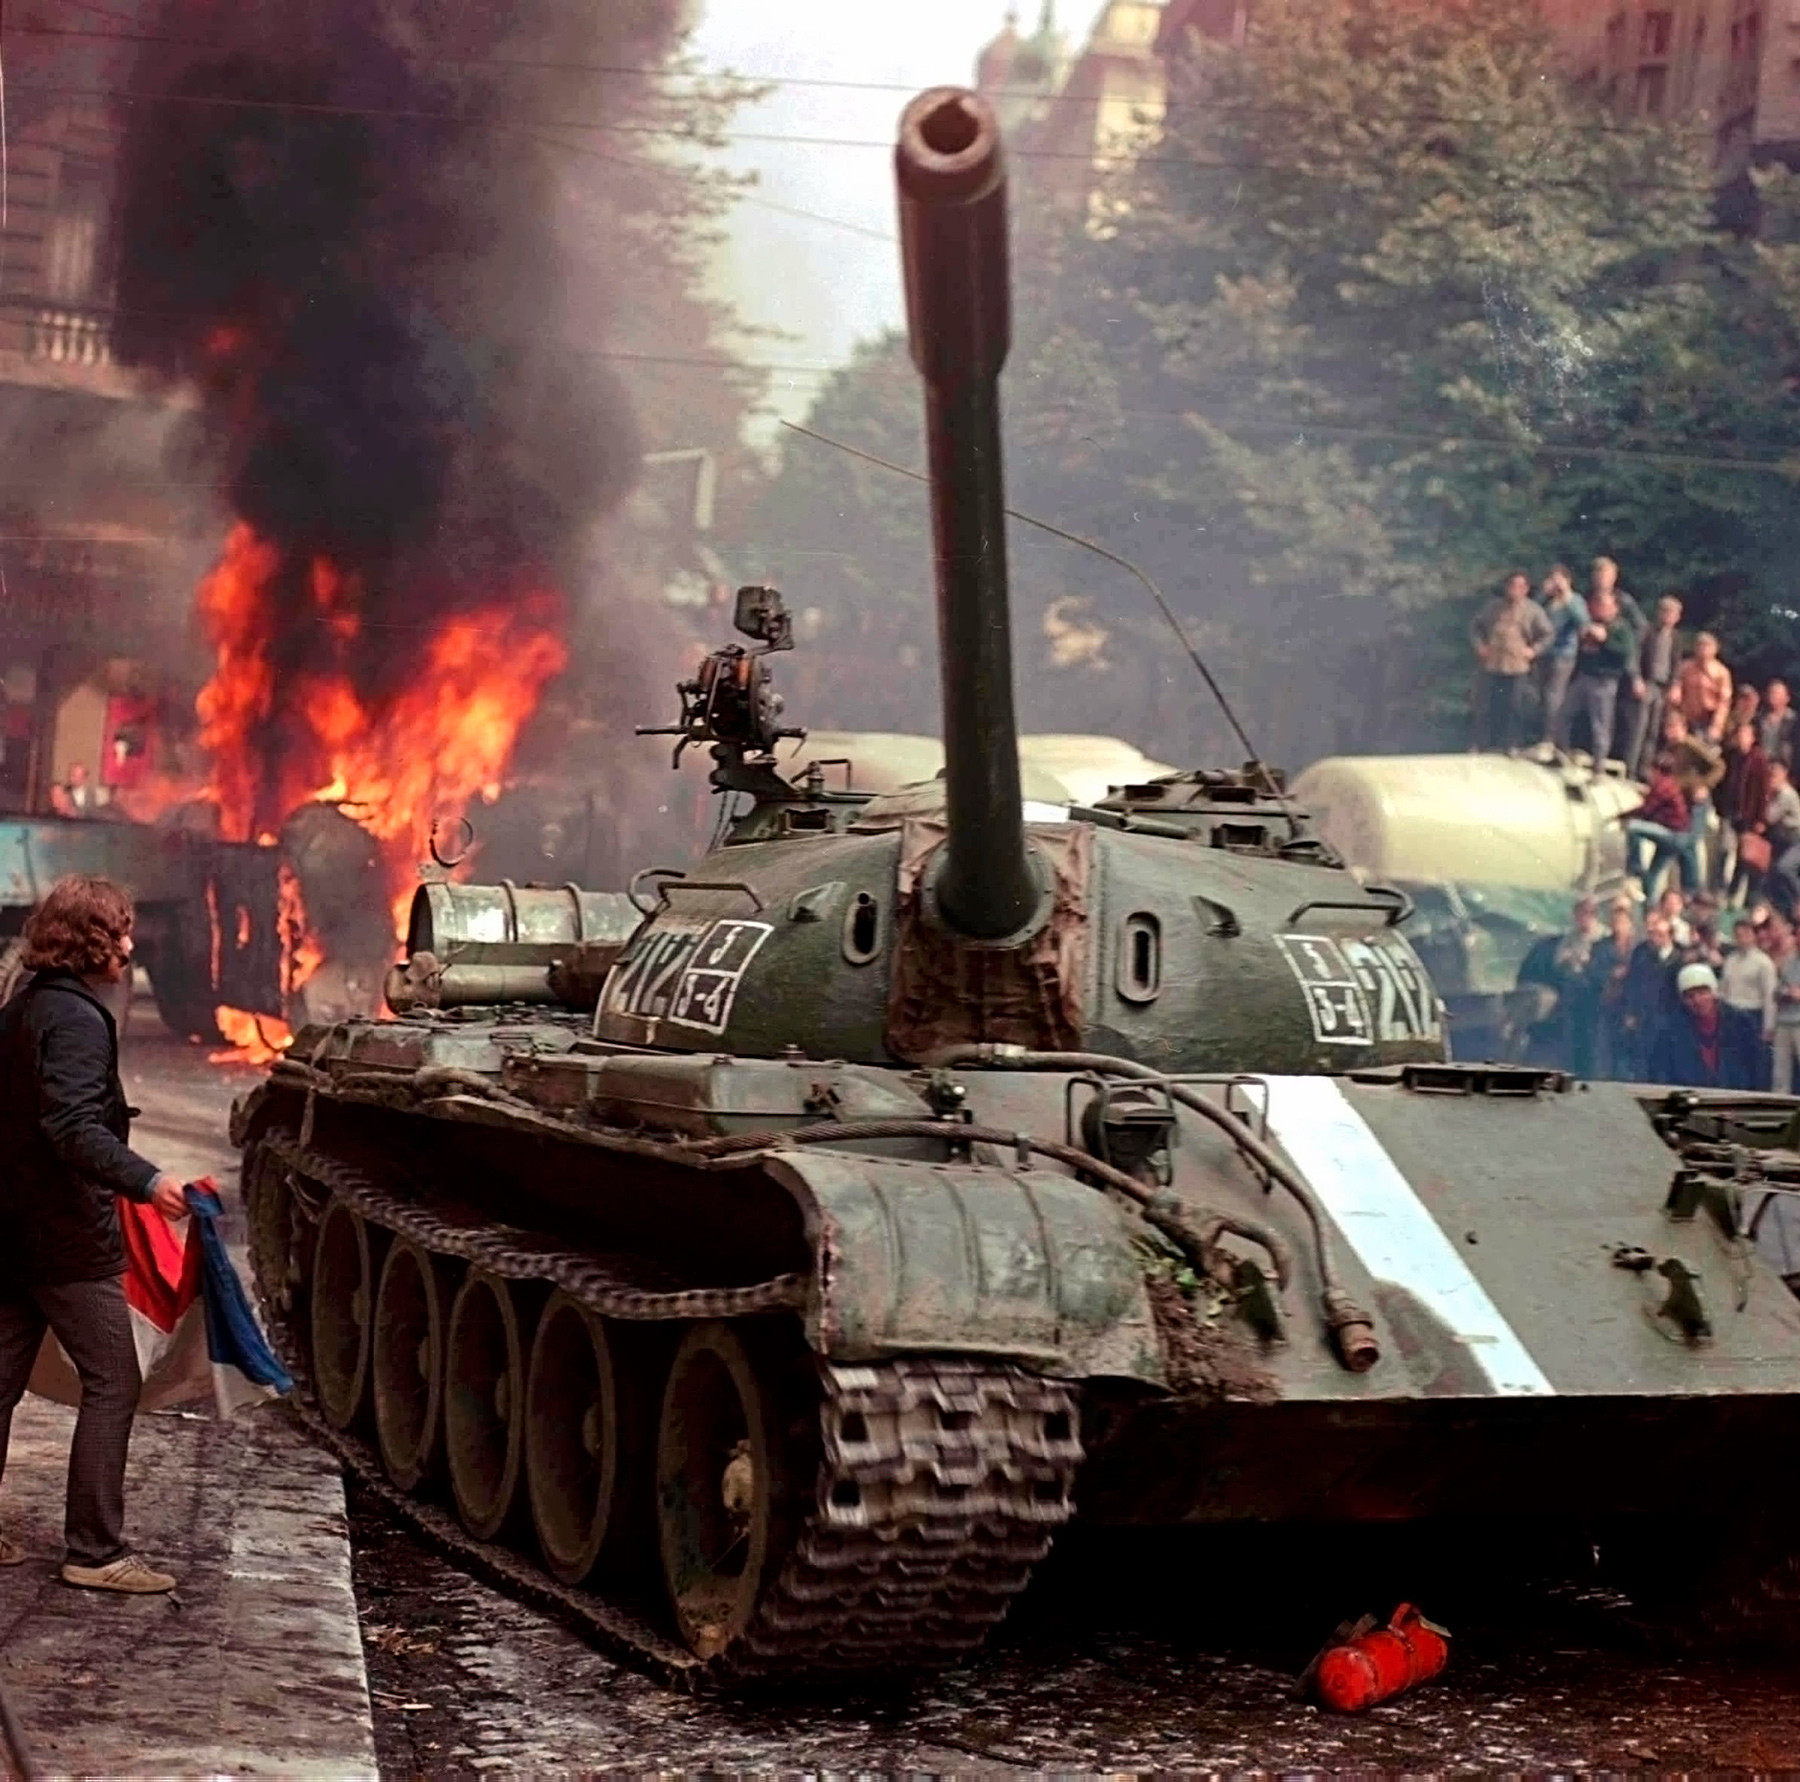 Sovjetski tenk se probija kroz barikade na ulicama Praga, kolovoz 1968.